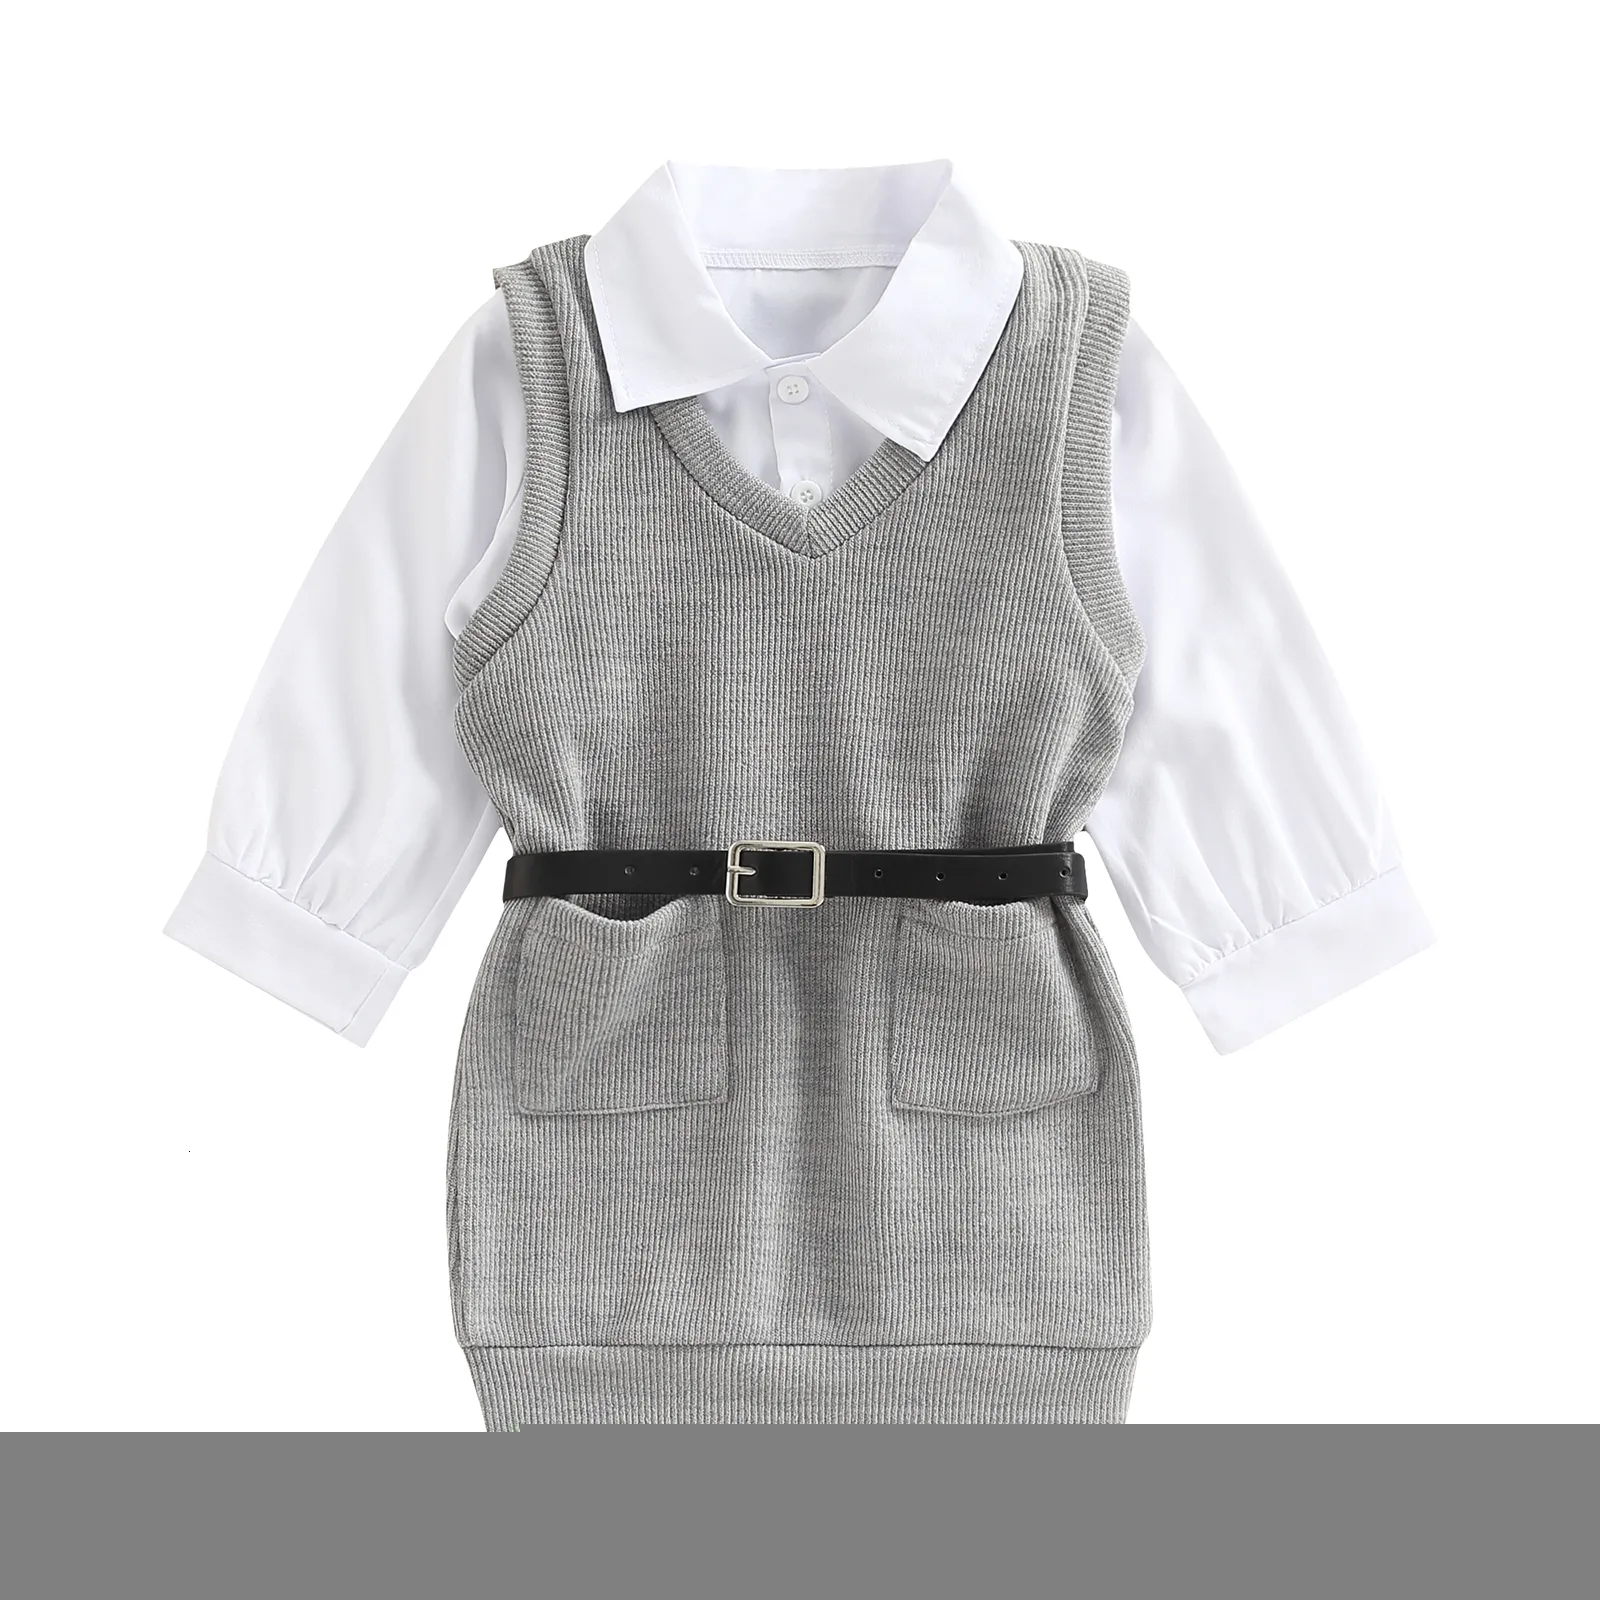 Giyim Setleri Toddler Çocuk Bebek Kız Bebek Sonbahar Kıyafet Beyaz Uzun Kollu Düğme Gömlek Gri Kolsuz Kabemli Elbise 2 7T 221118